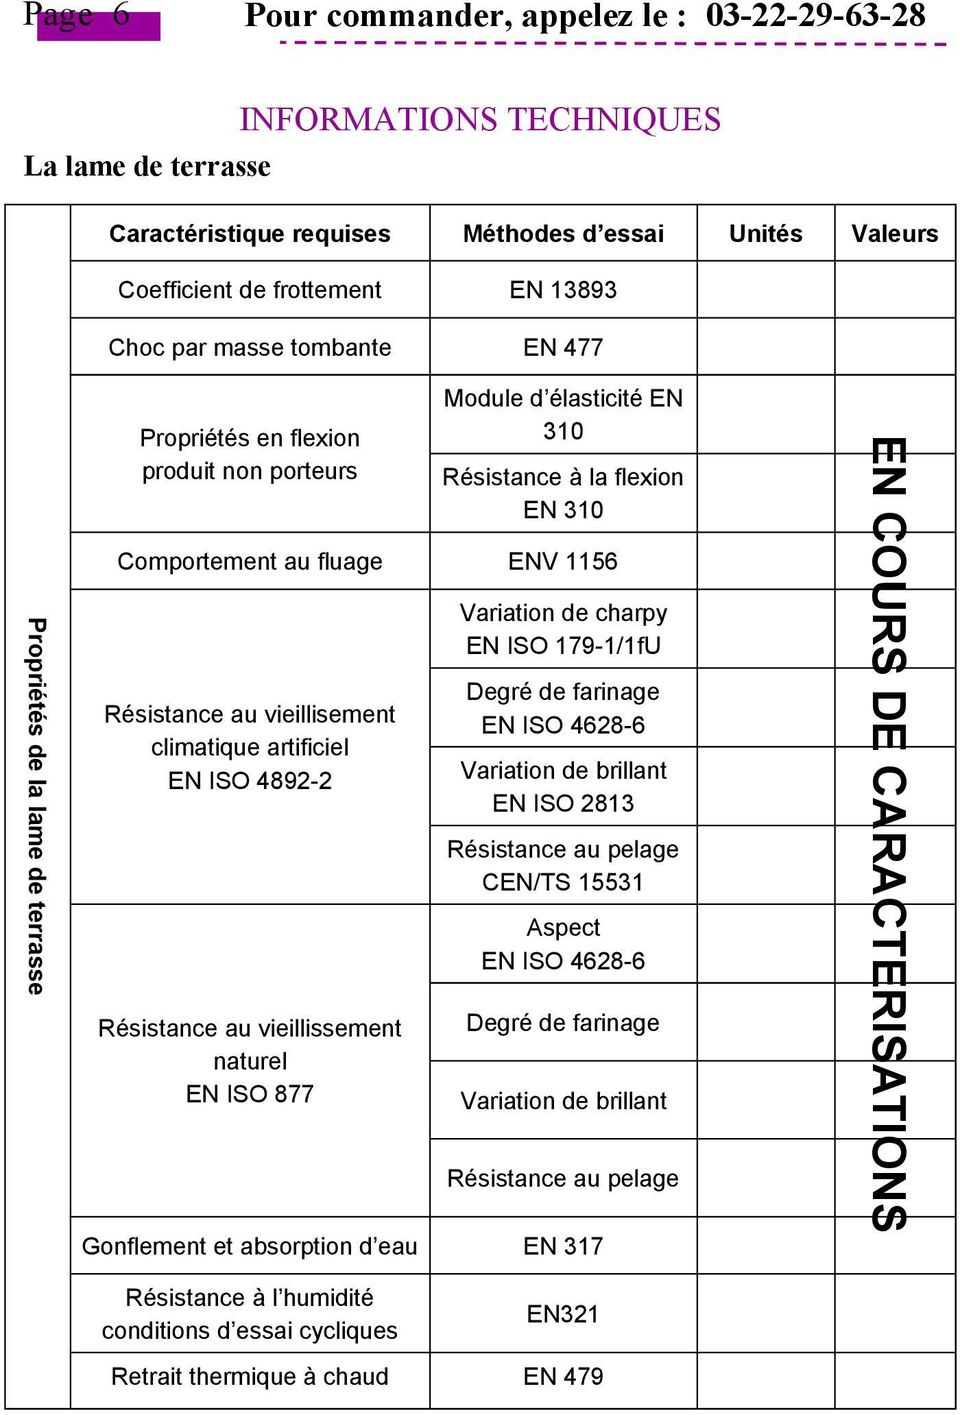 fluage ENV 1156 Variation de charpy EN ISO 179-1/1fU Résistance au vieillisement climatique artificiel EN ISO 4892-2 Degré de farinage EN ISO 4628-6 Variation de brillant EN ISO 2813 Résistance au